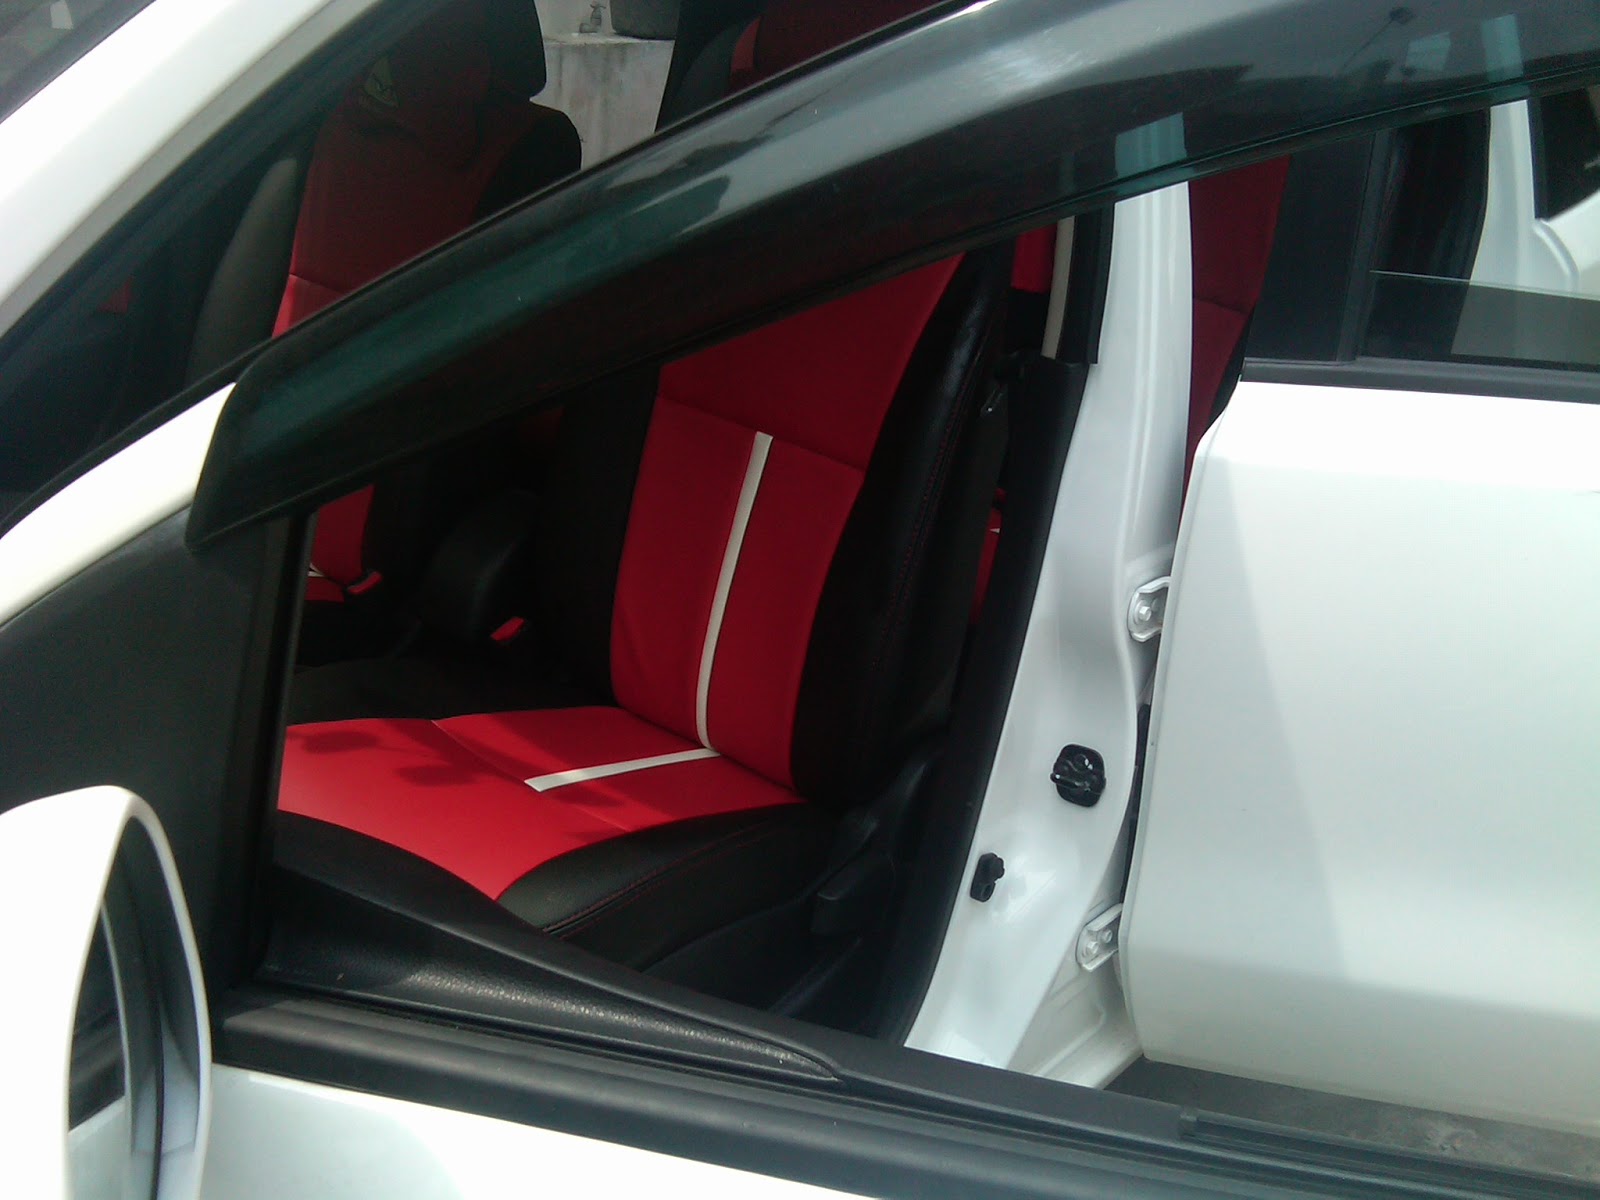 Sarung Jok Mobil Nissan Grand Livina Kombinasi Merah Dan Hitam